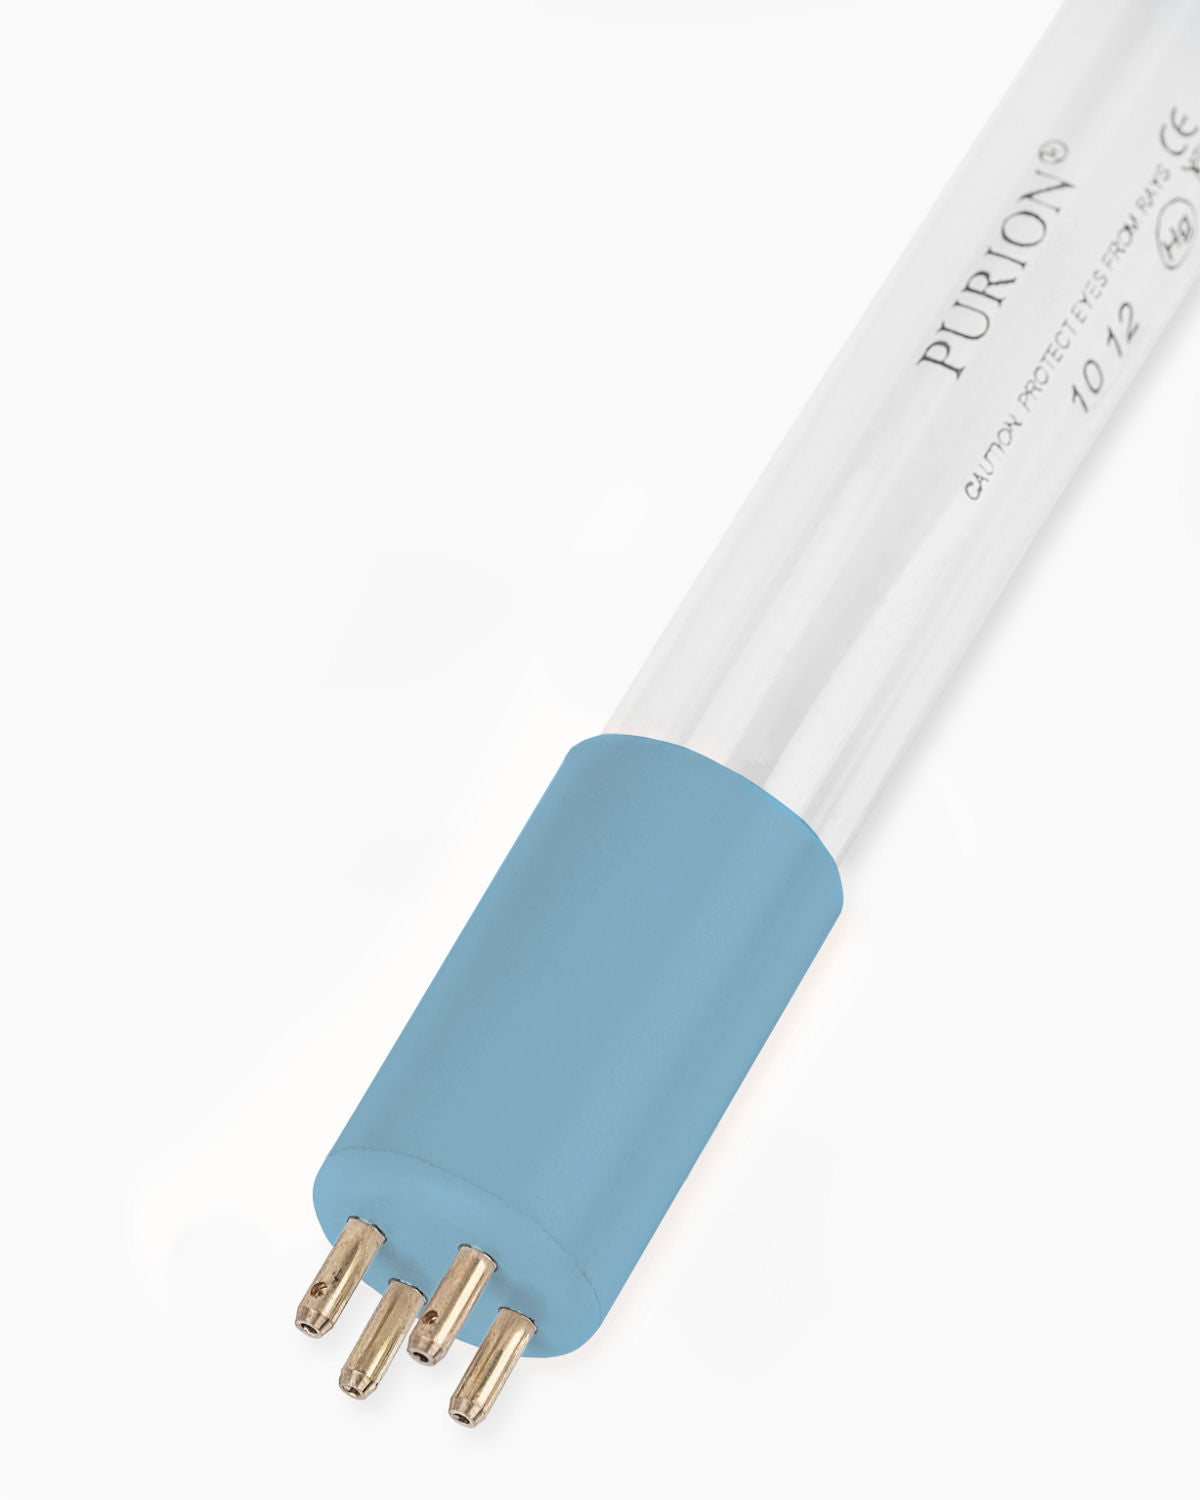 Eine blaue Lichtröhre, PURION 2500 36 W 110 - 240 V AC Basic, auf weißem Hintergrund.